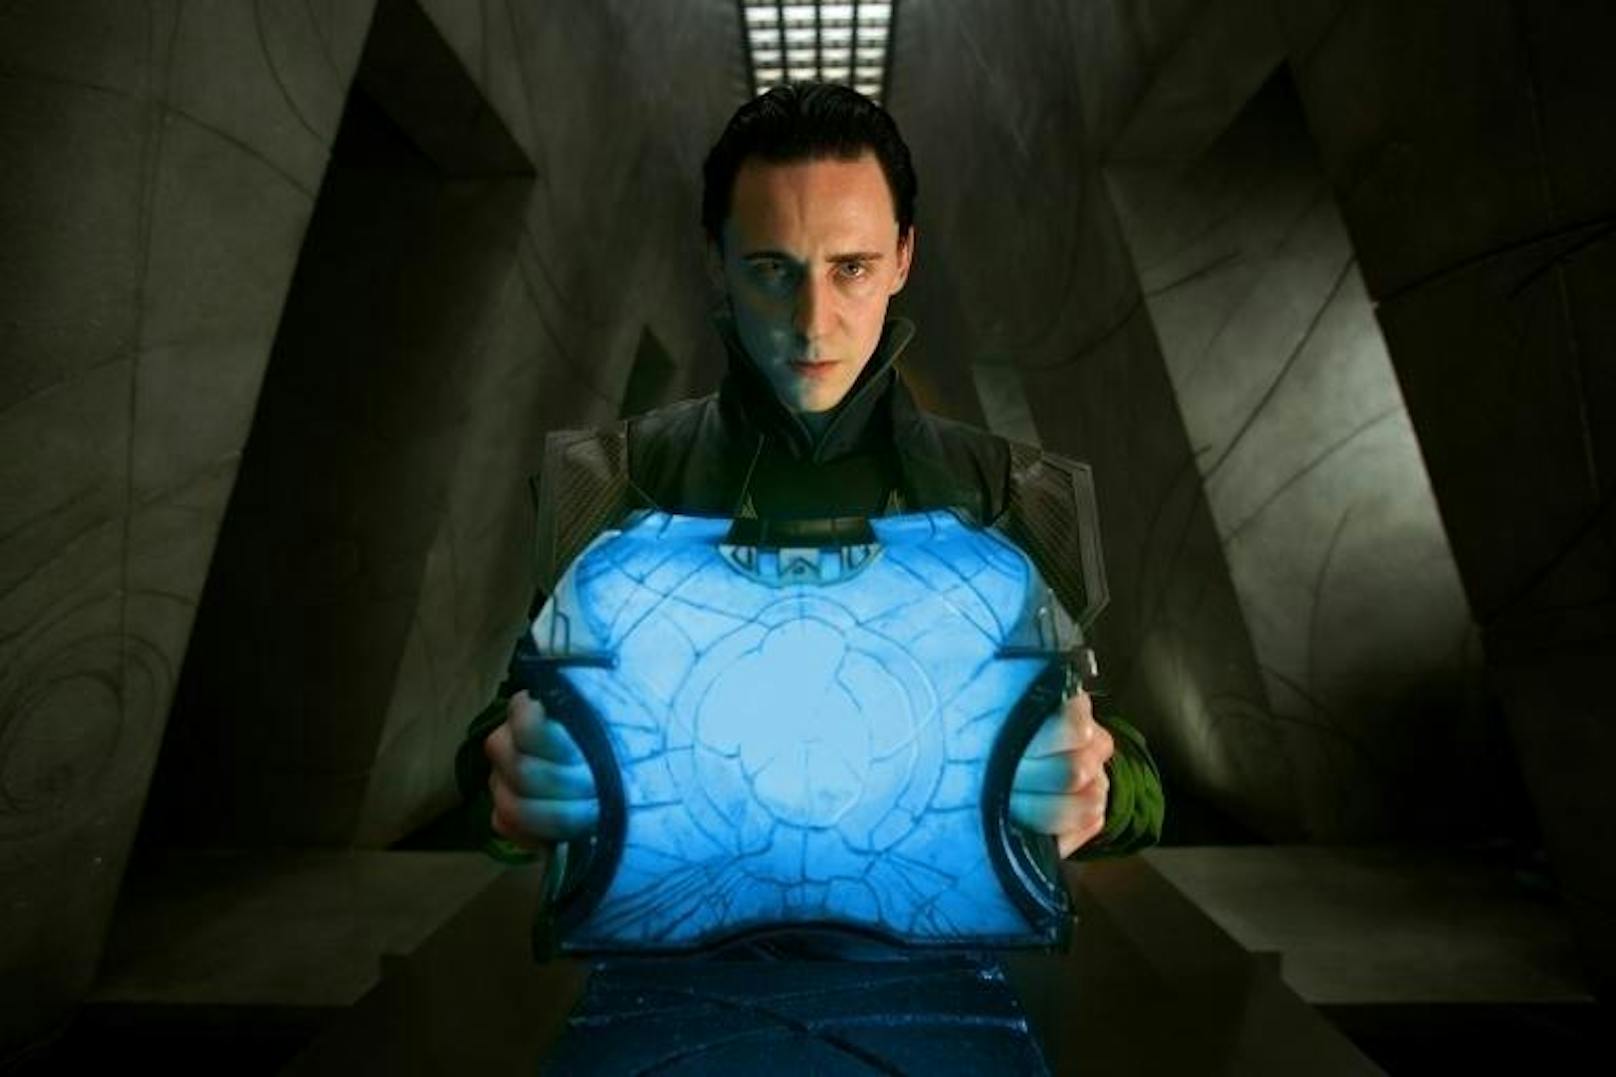 Tom Hiddleston als Loki in "Thor".